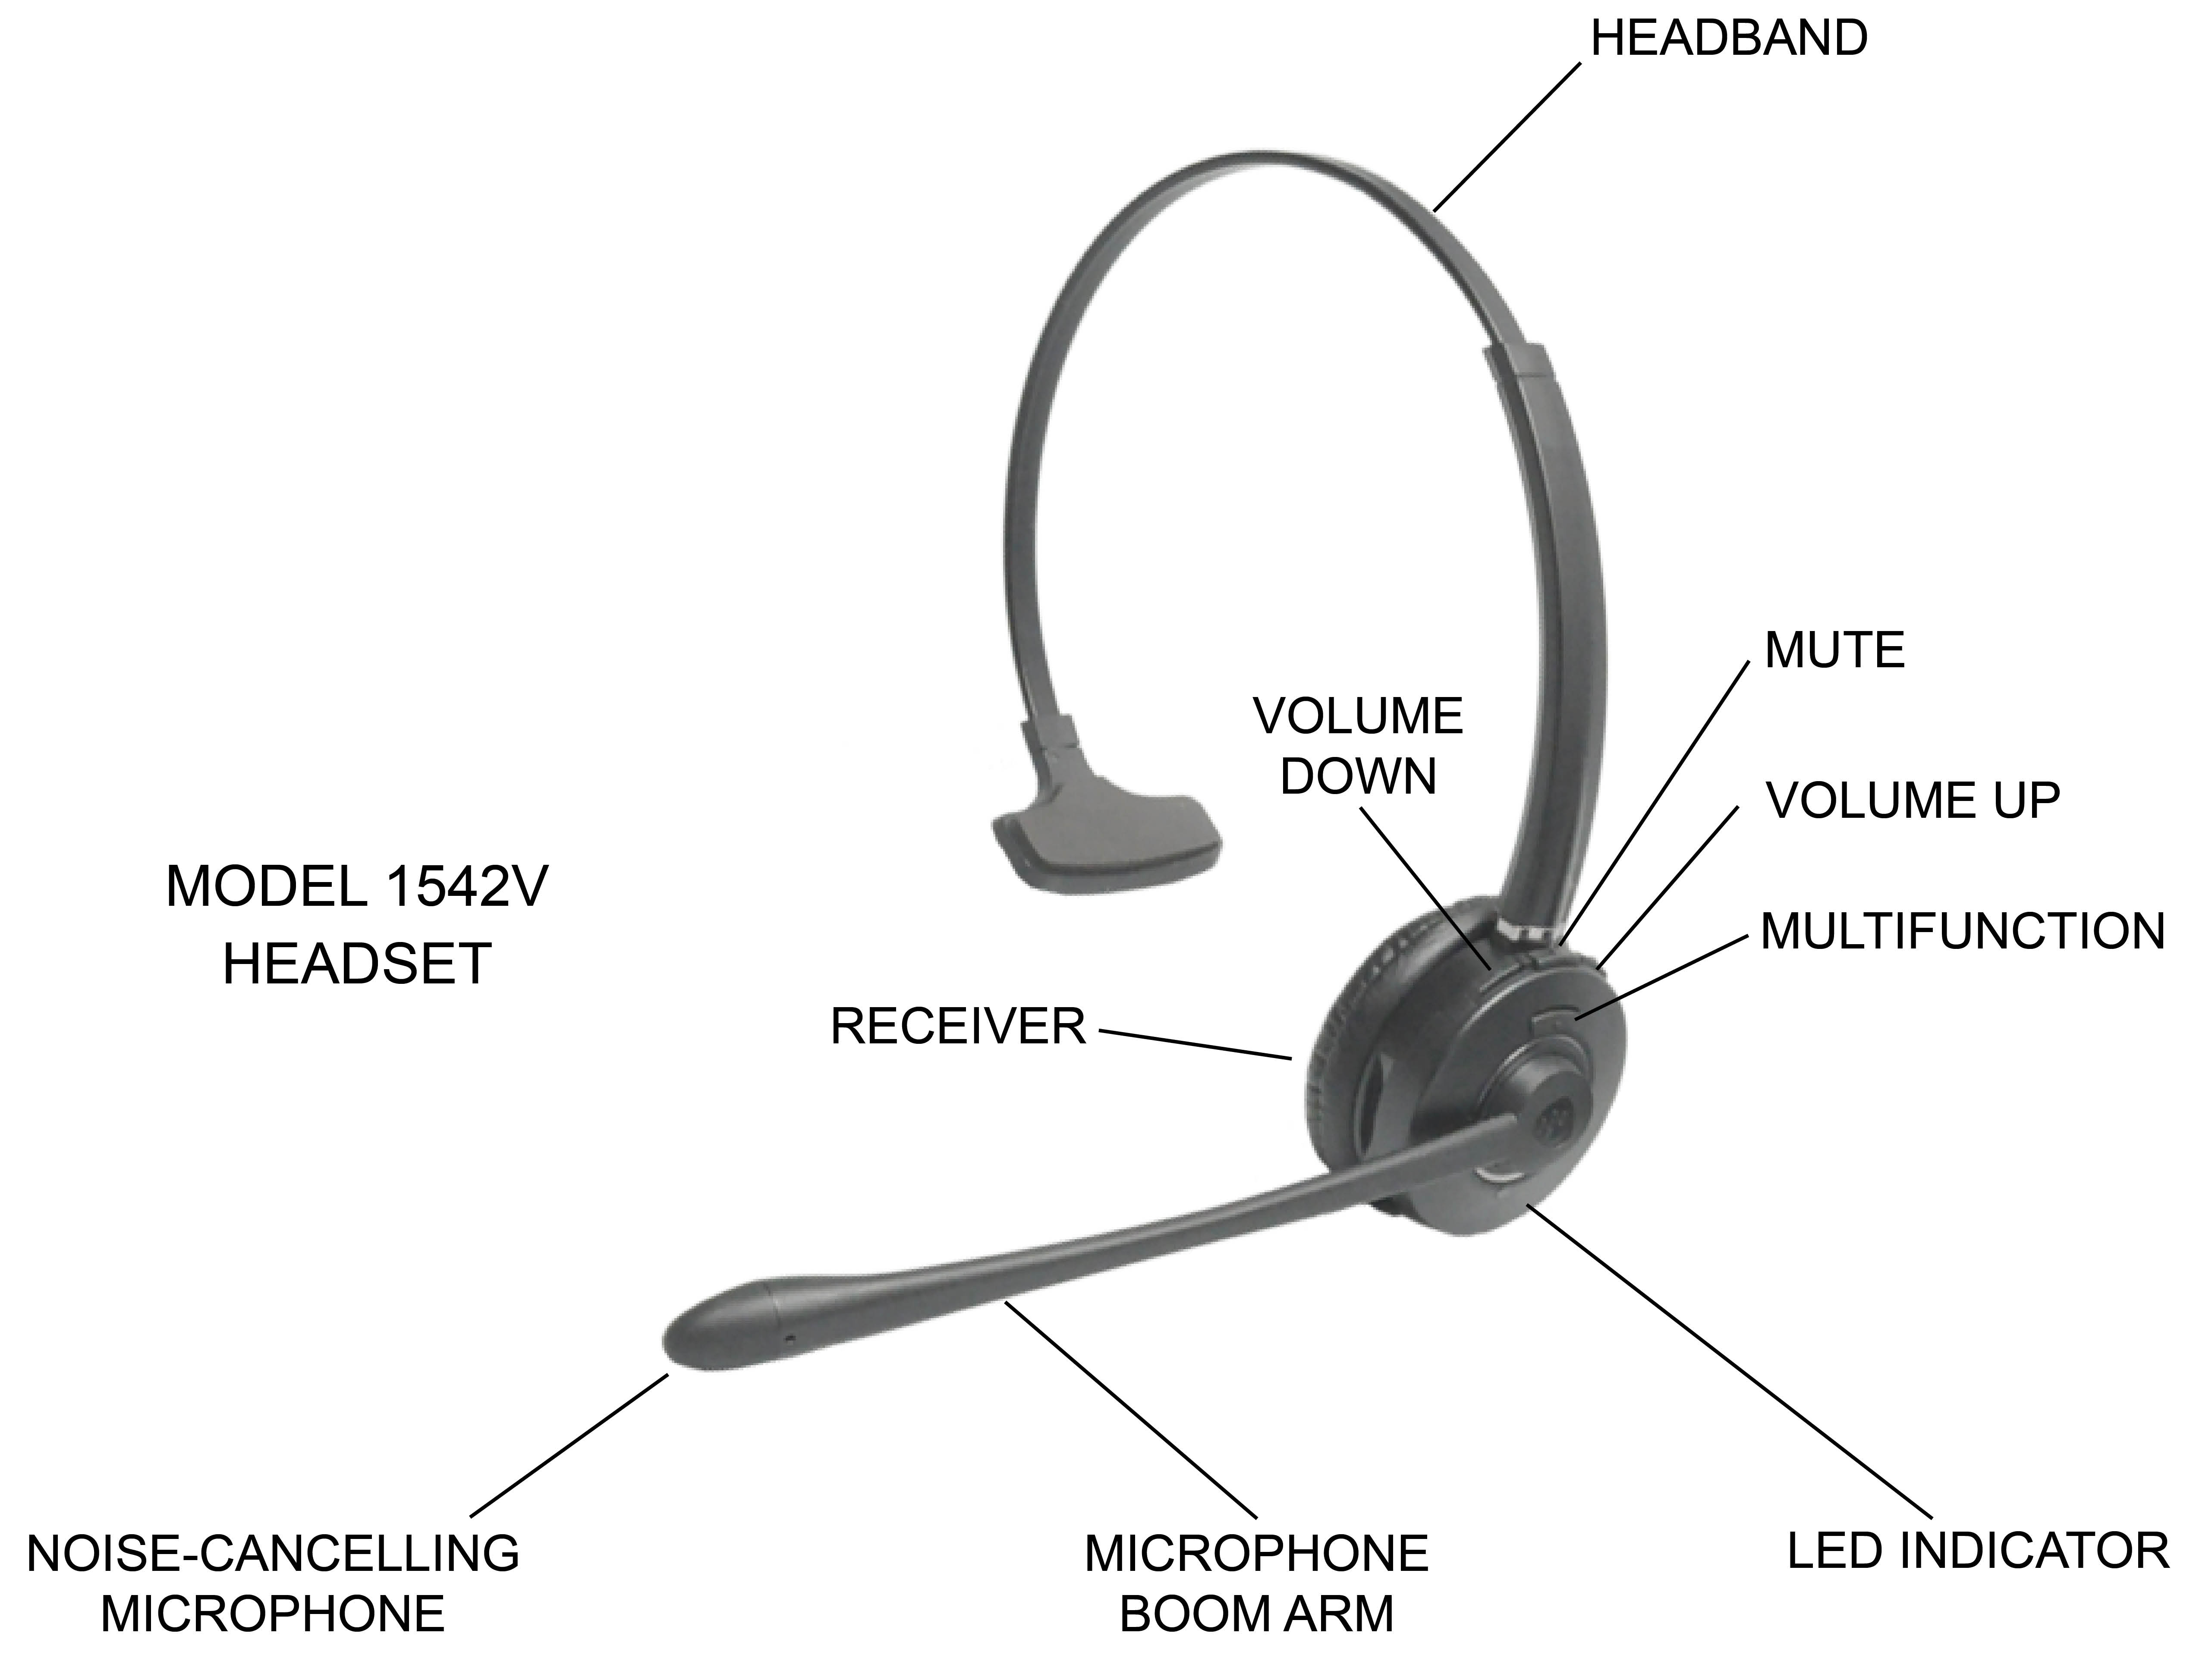 1542V headset